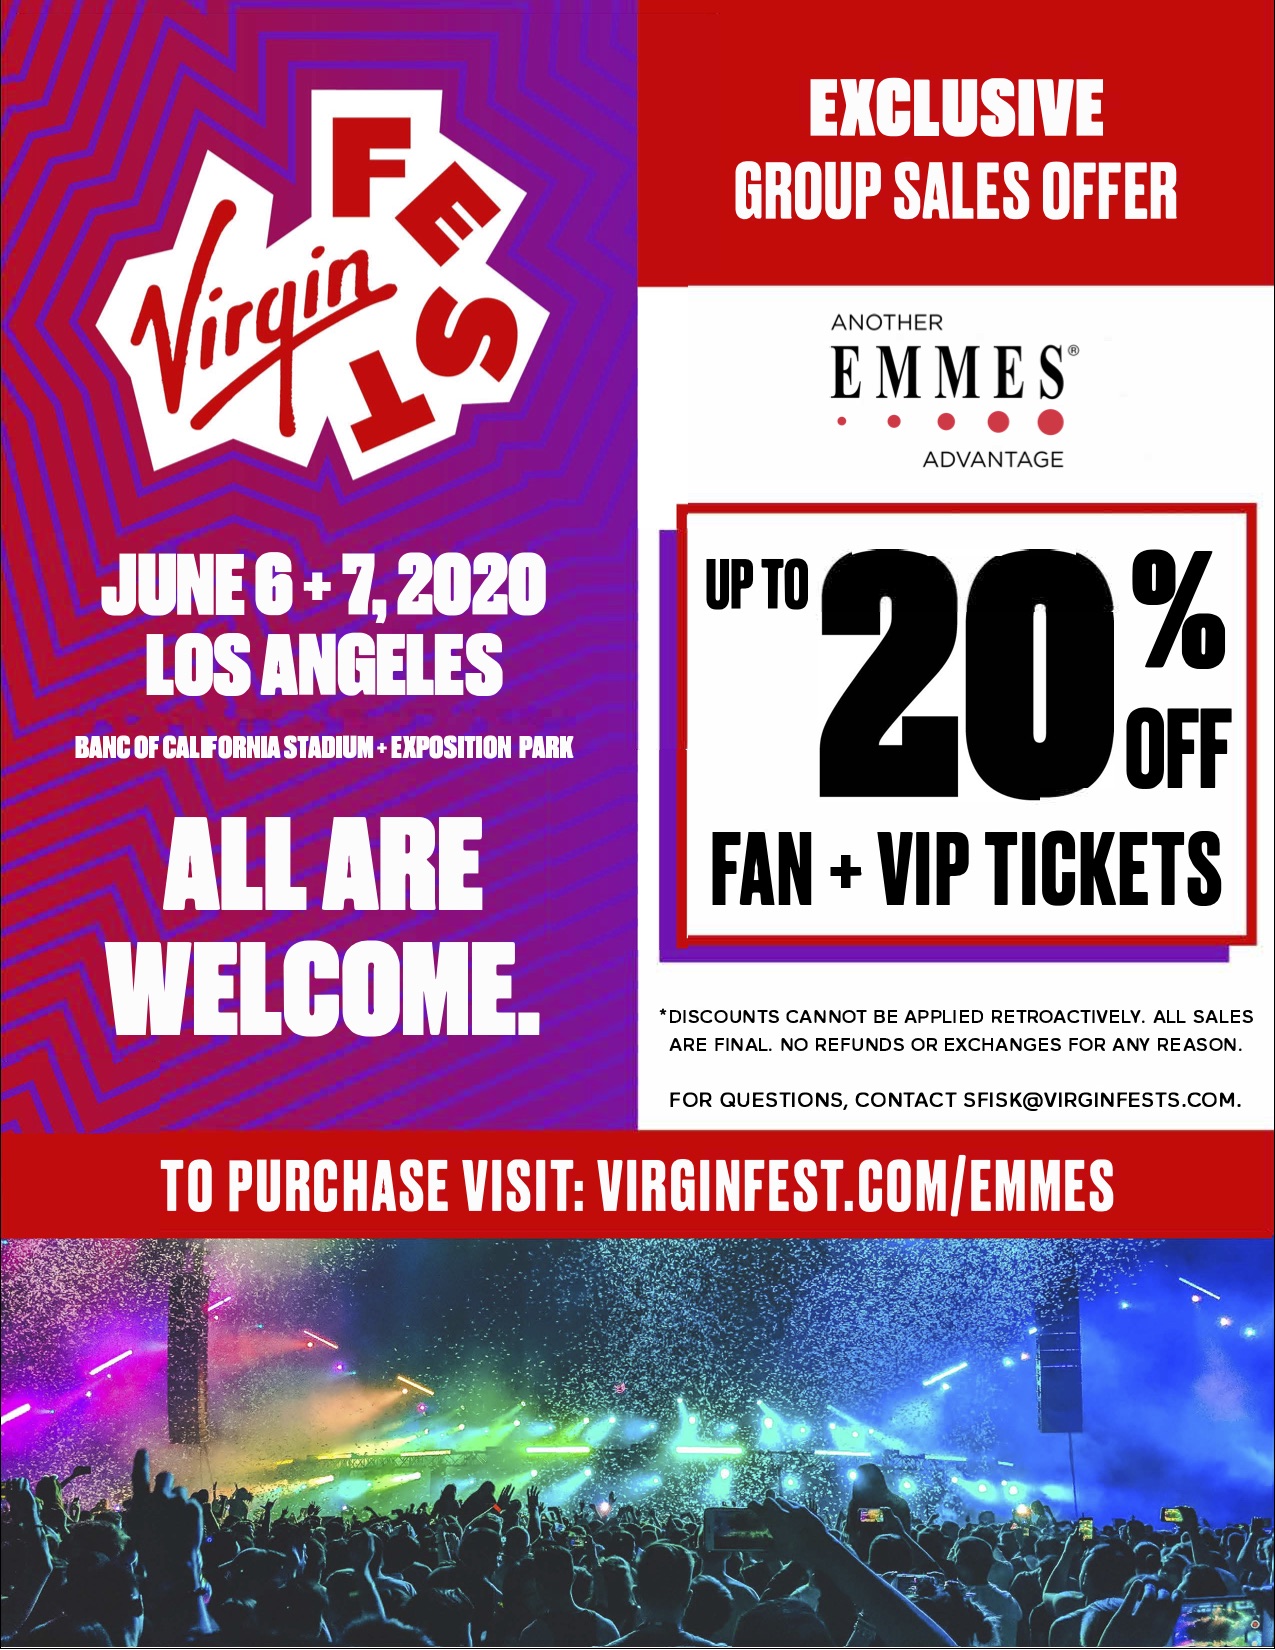 Virgin Fest 2020 EMMES Advantage Linked Flyer[1]